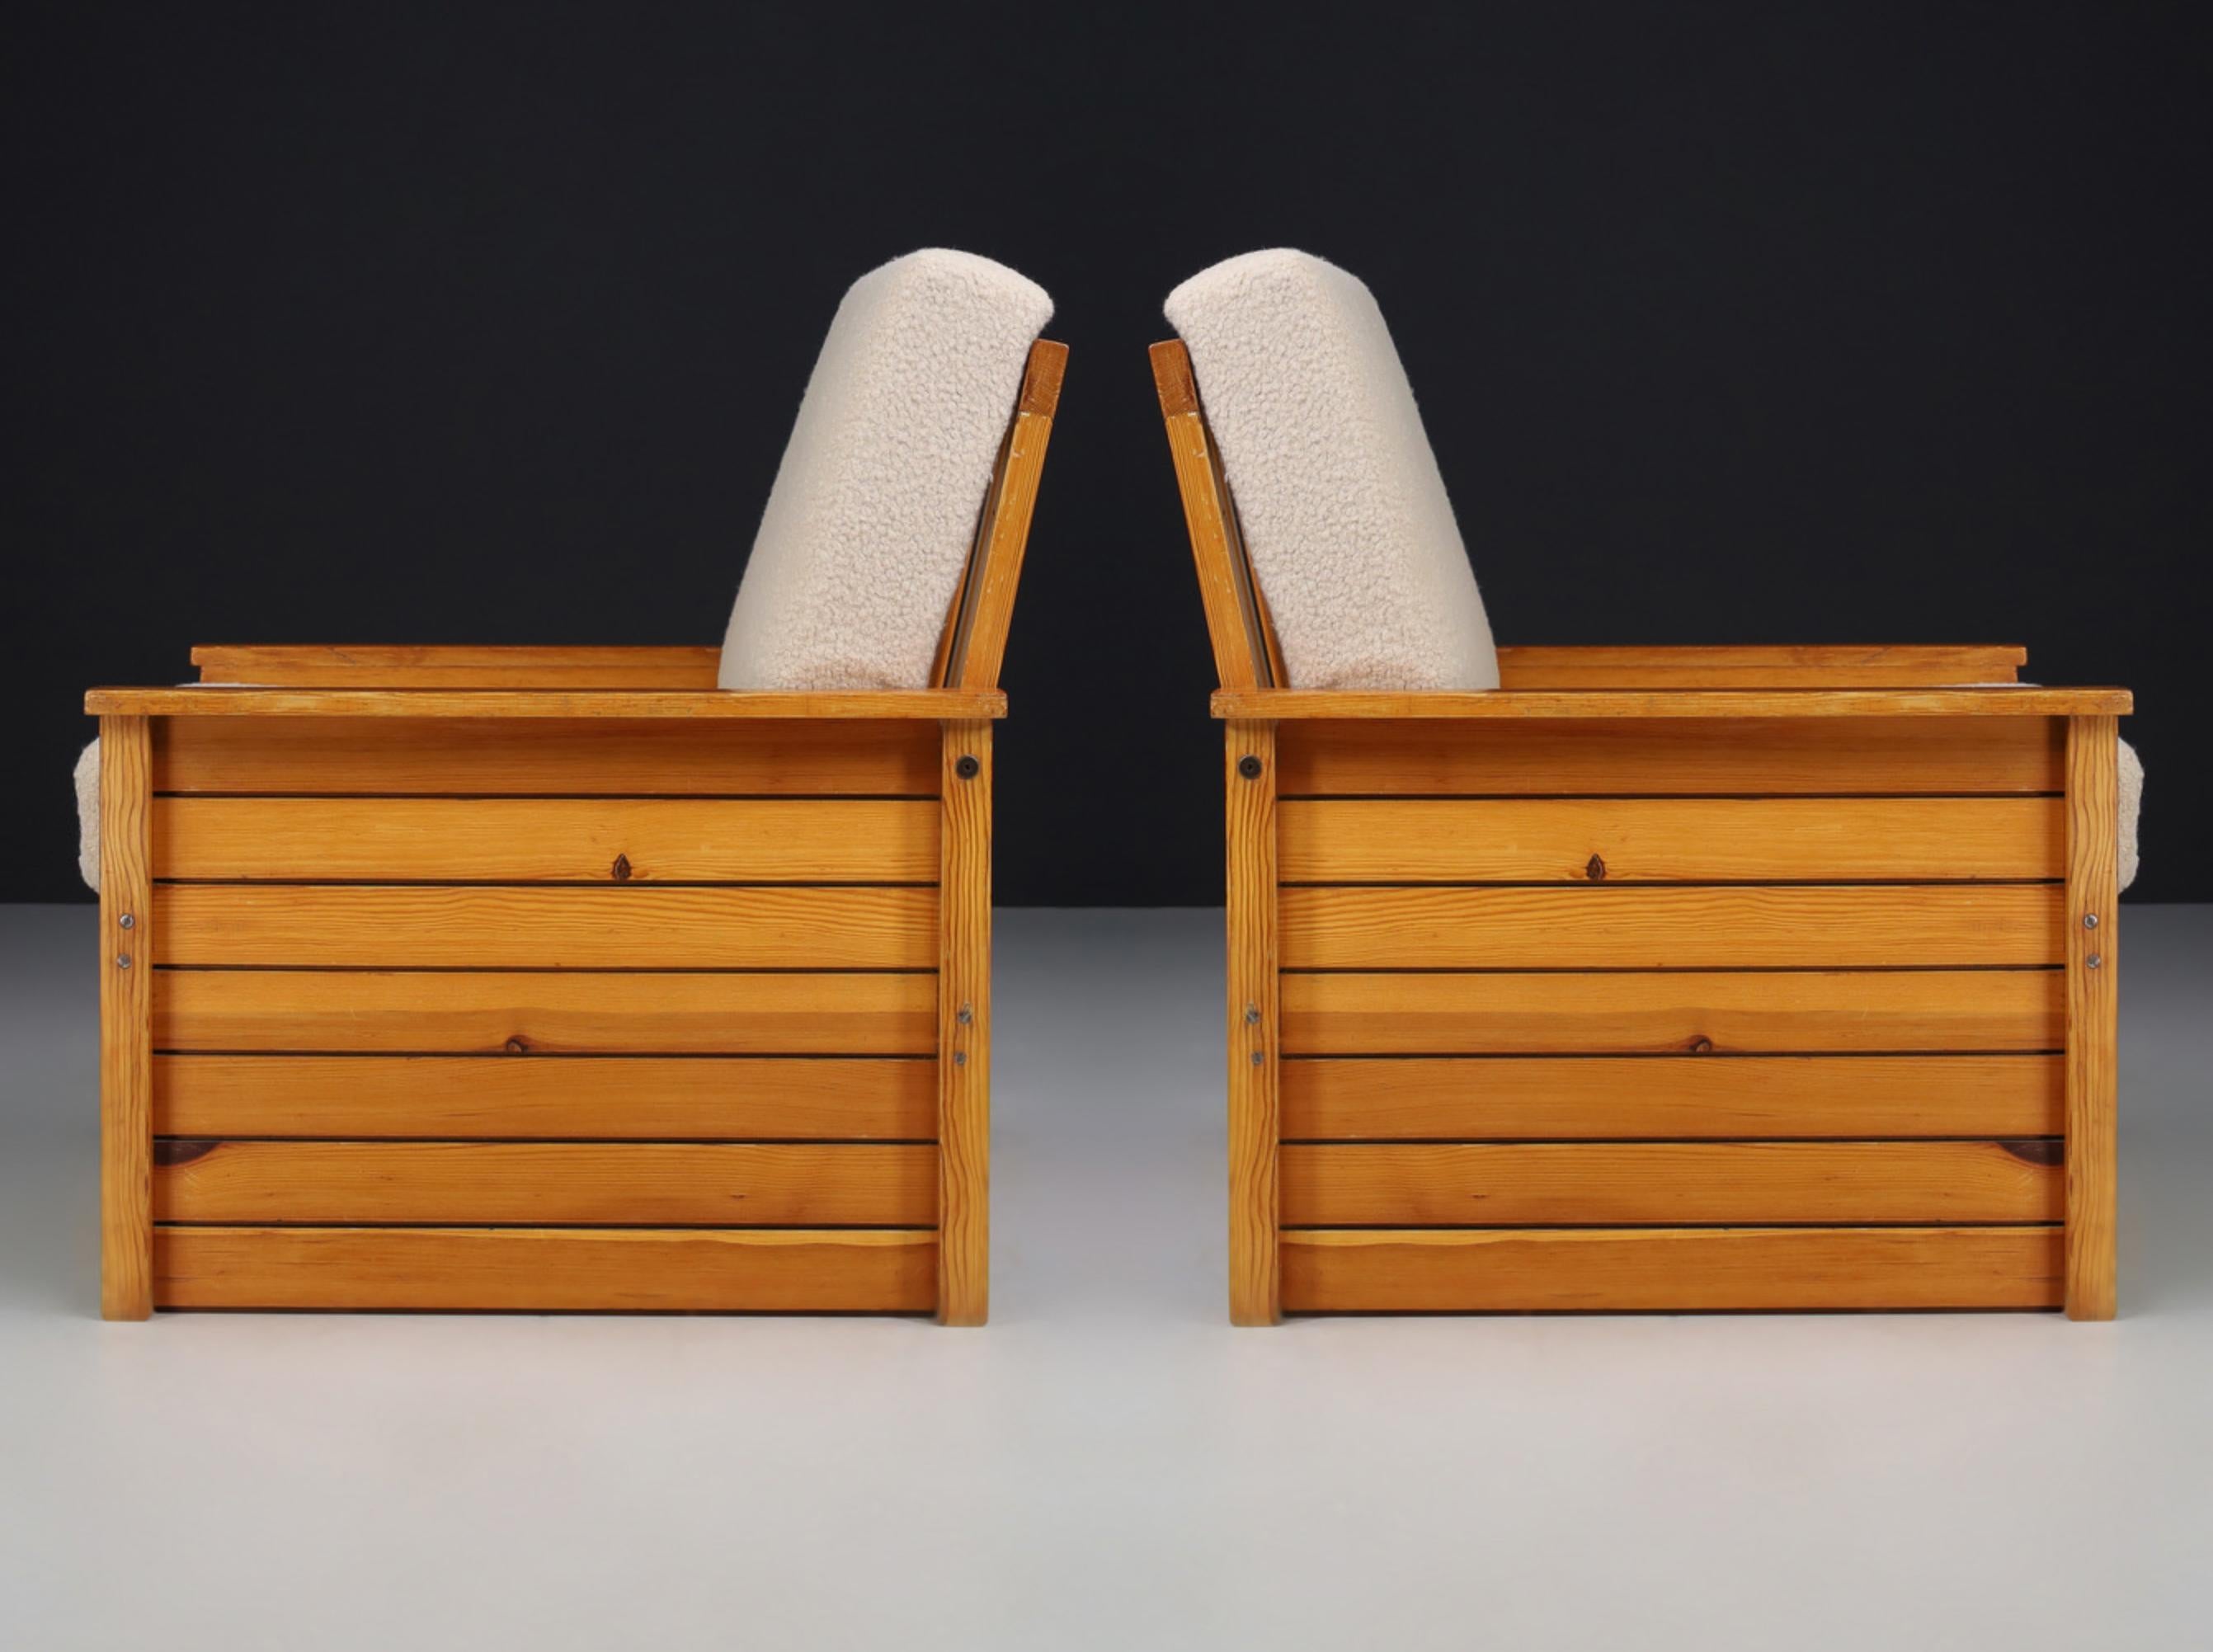 Loungesessel aus Kiefer und Teddystoff, Frankreich 1960er Jahre

Zwei französische Loungesessel aus Kiefernholz und neu gepolstertem Teddy-Stoff, entworfen und hergestellt in Frankreich in den 1960er Jahren. Diese beiden Sessel sind ein echter